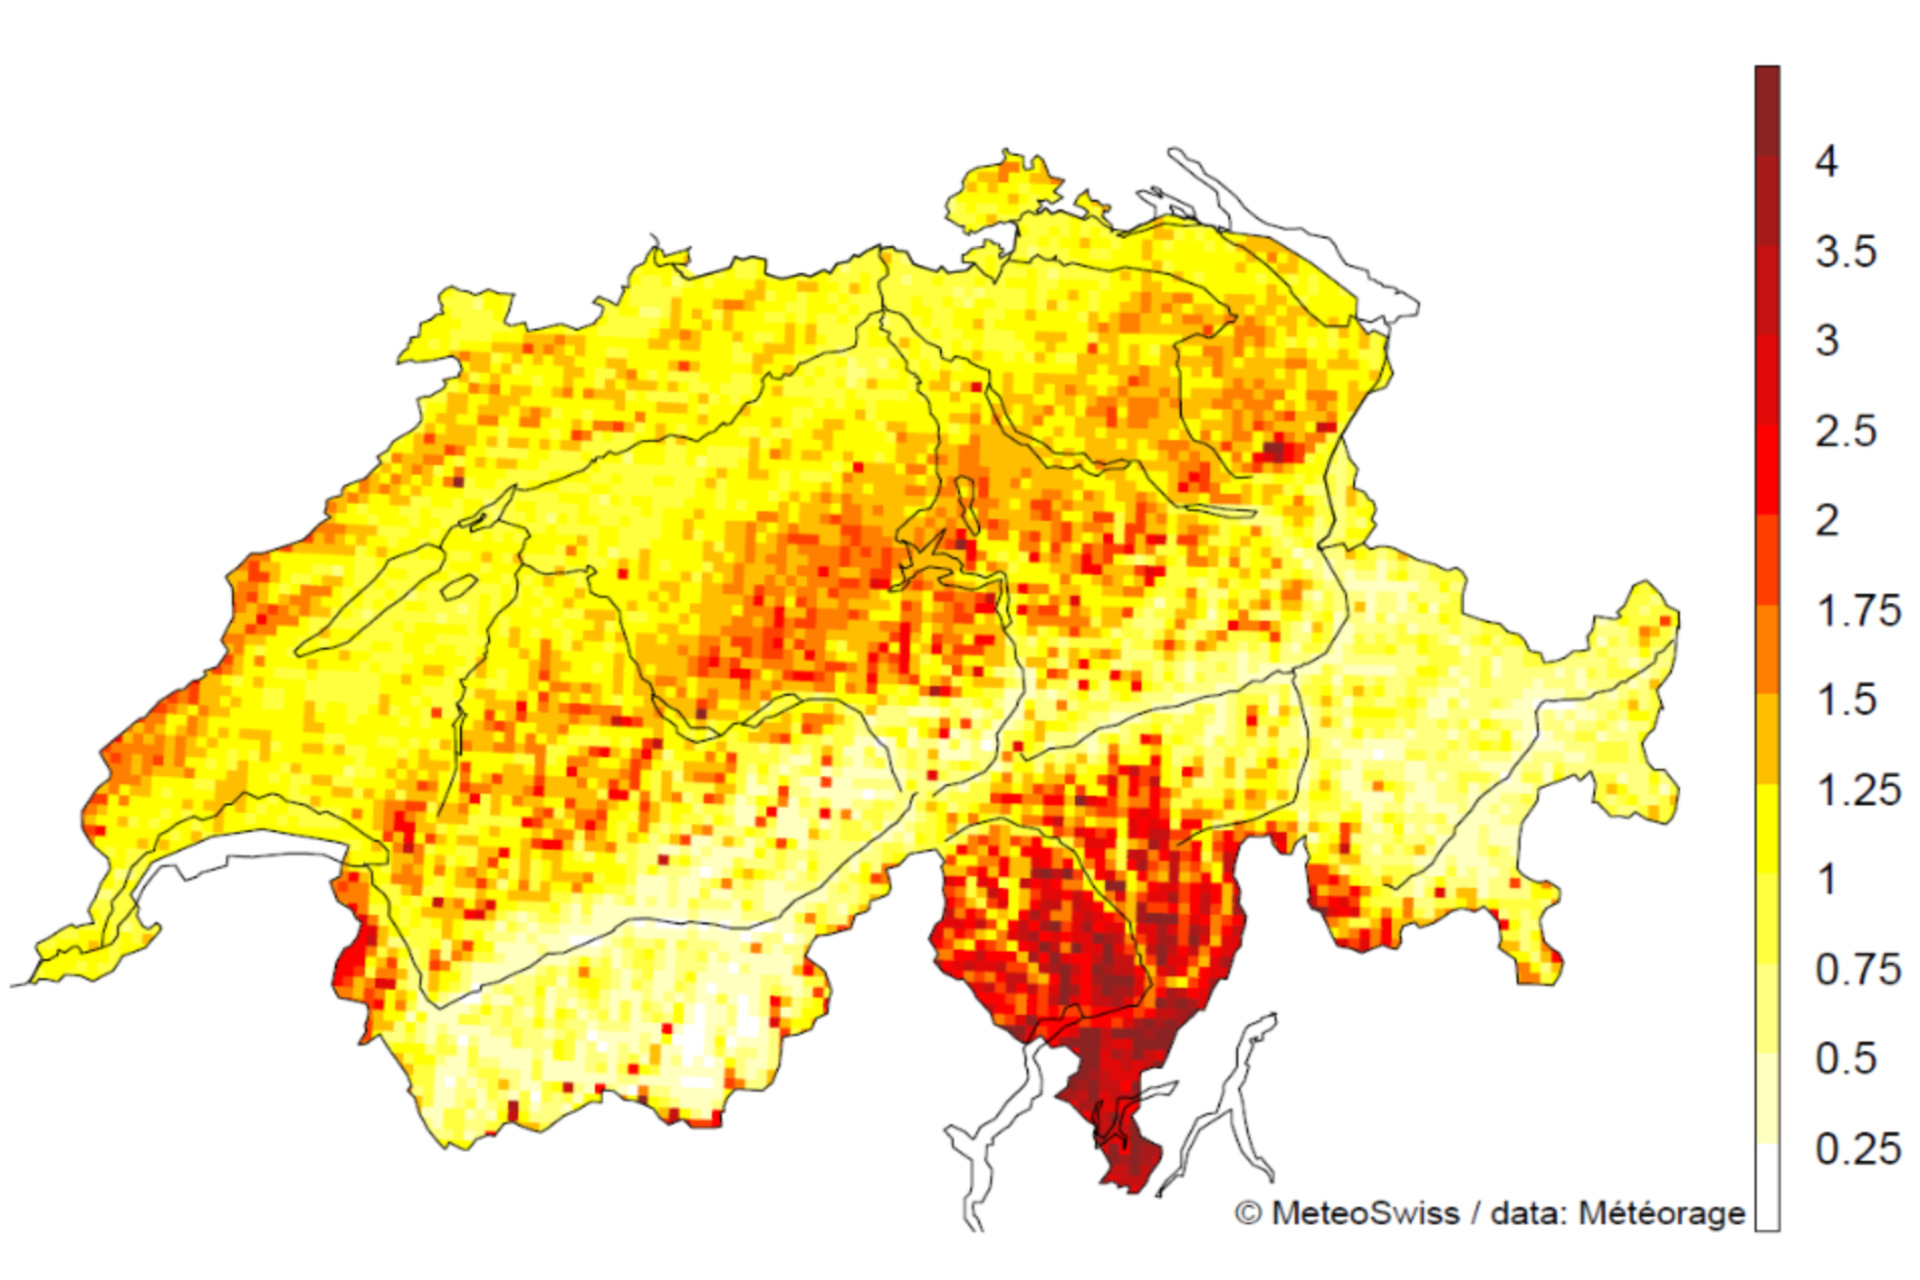 Raios: o número de raios por quilômetro quadrado na Suíça no período 2000-2020, excluindo raios secundários